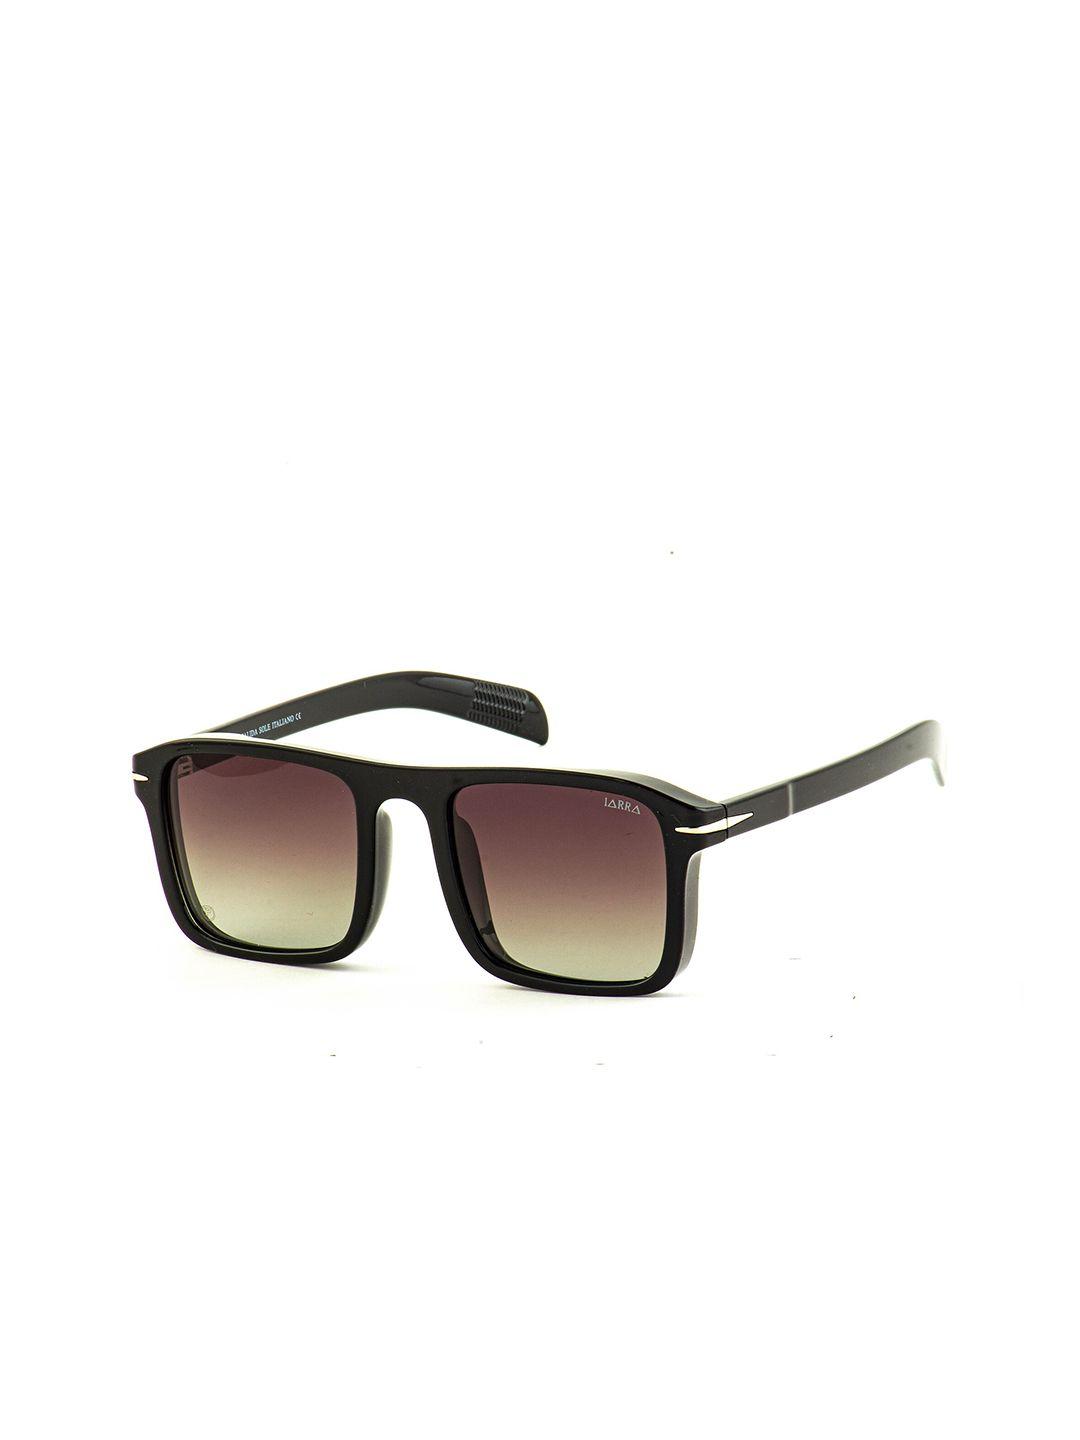 iarra men square sunglasses with polarised lens ia-5120-c1